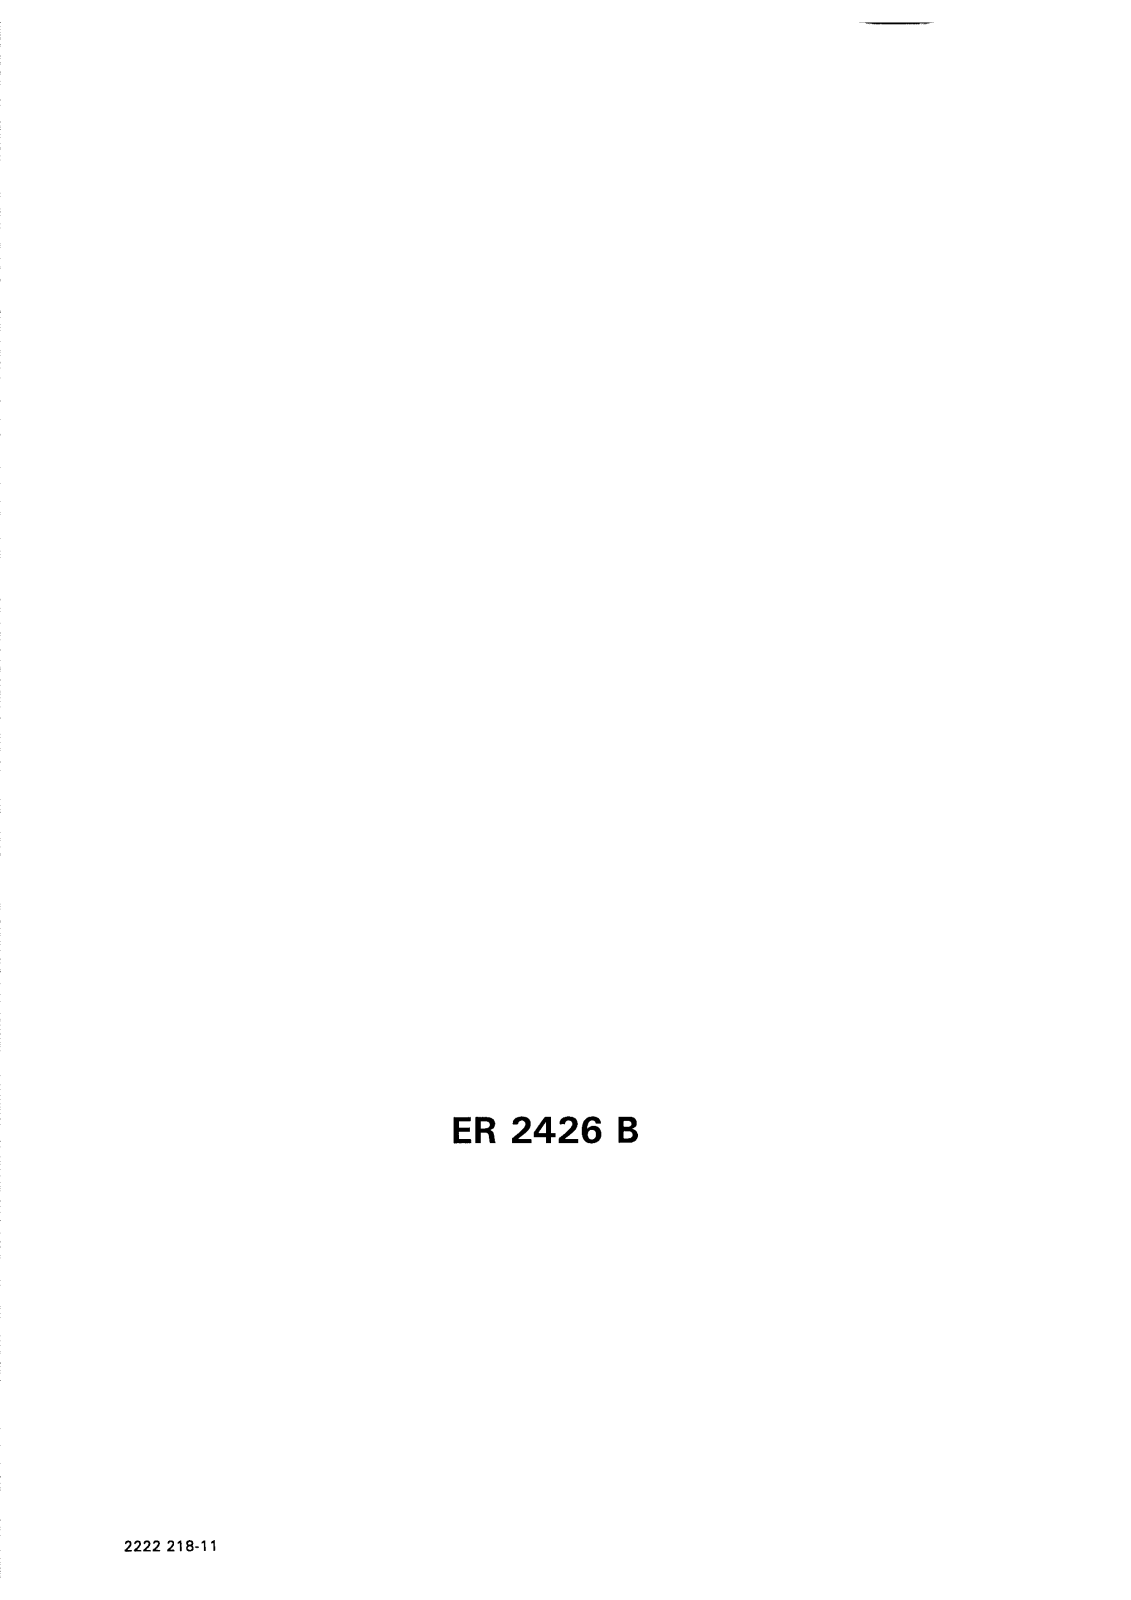 electrolux ER2426B User Manual